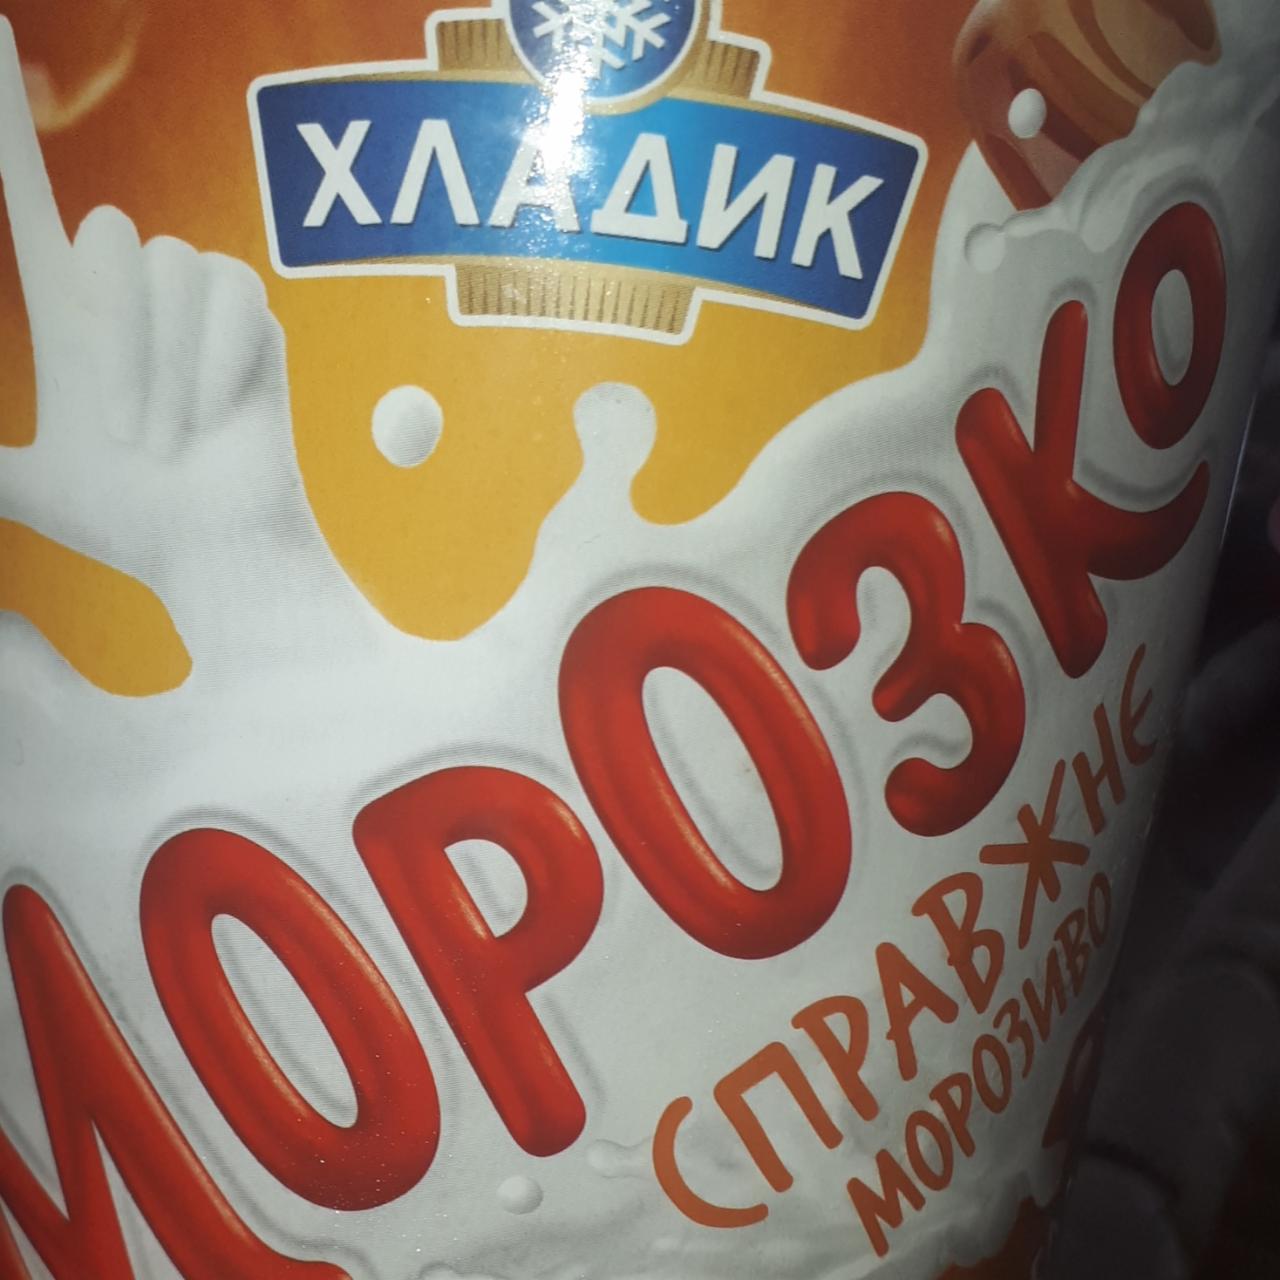 Фото - Морозиво зі смаком крем-брюле Морозко Хладик